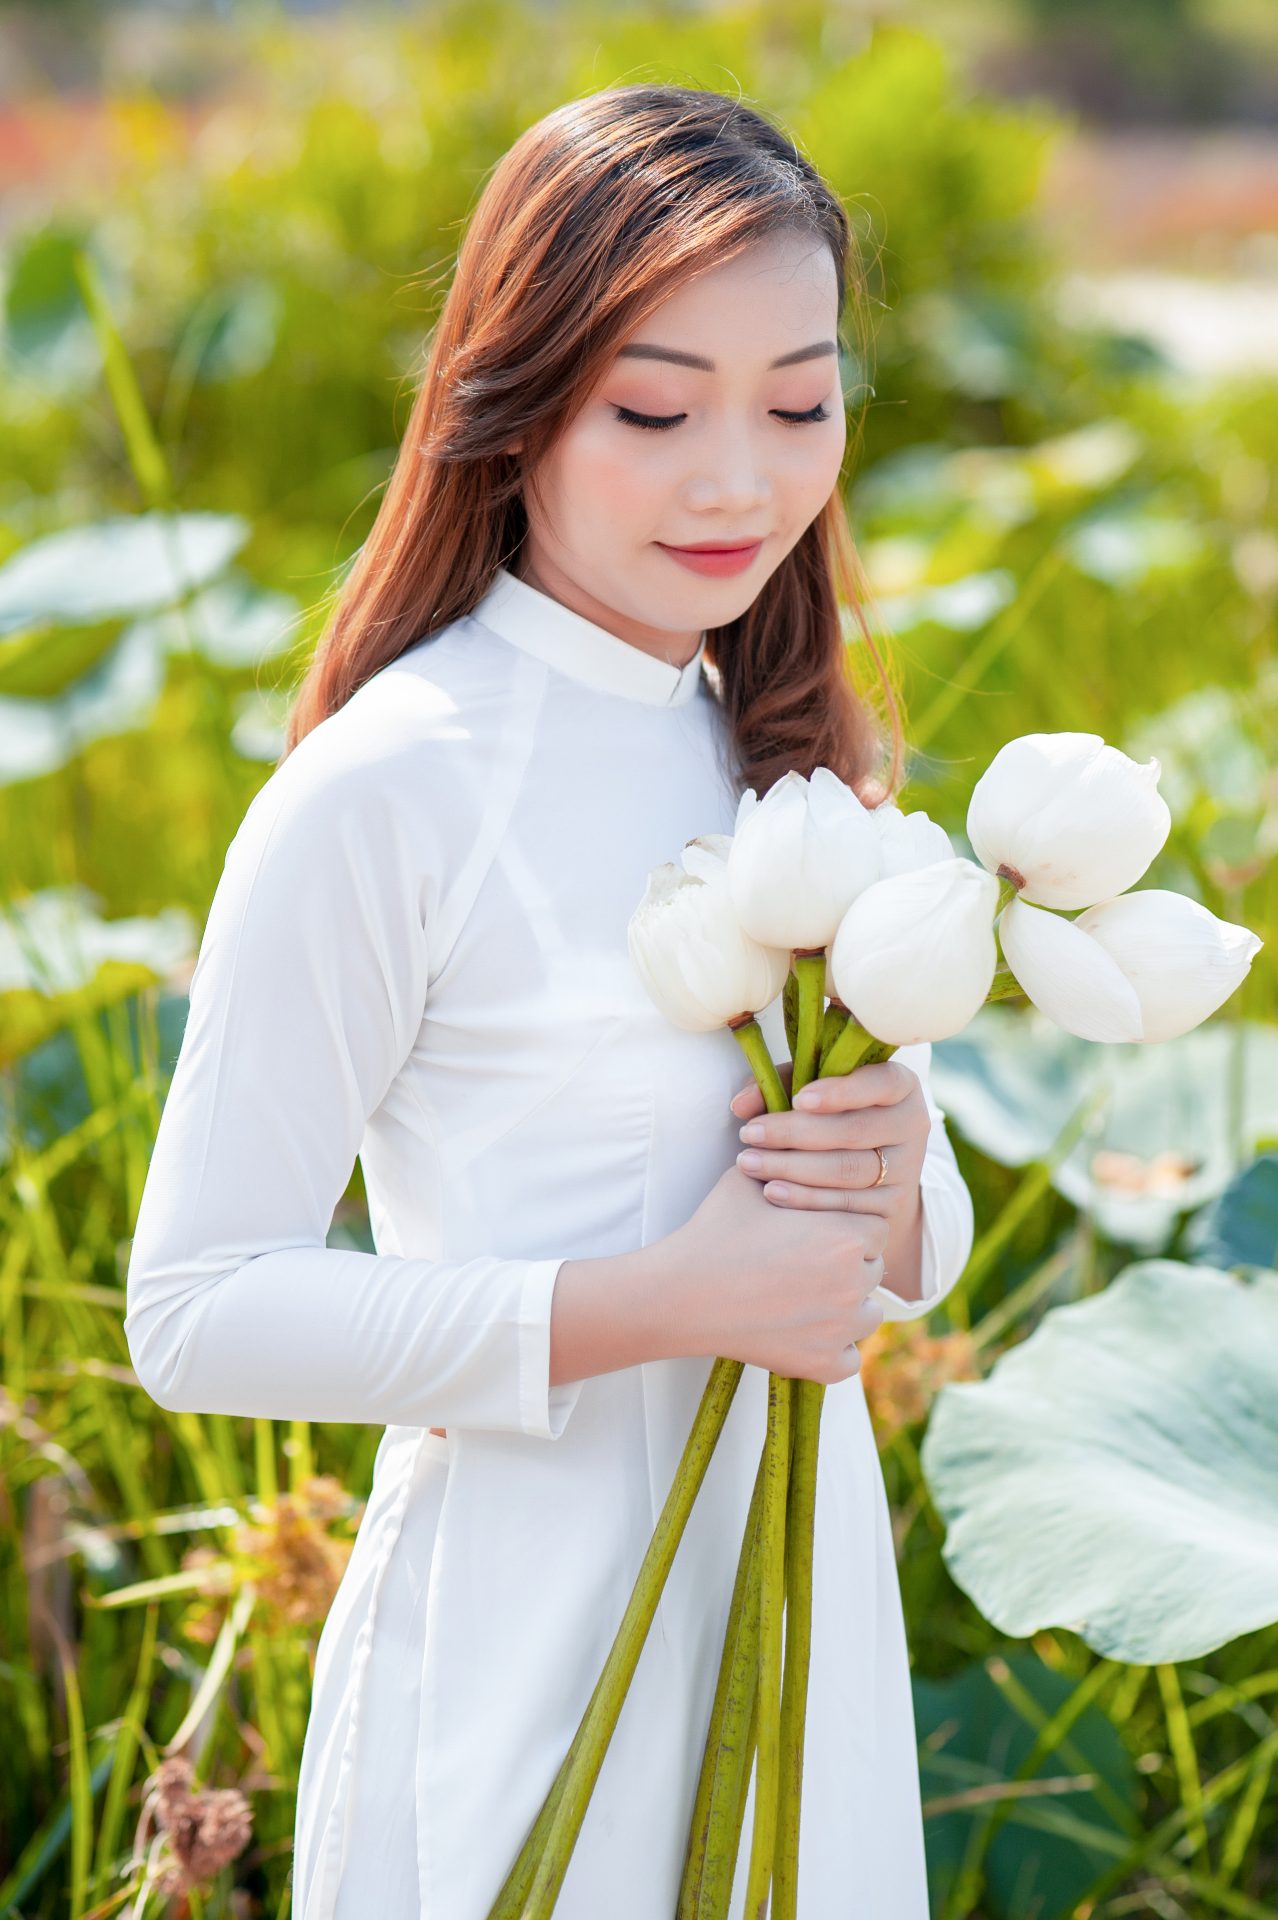 Hoa sen là loài hoa biểu tượng của đất nước Việt Nam. Với hình ảnh tinh tế và đầy sức sống, hoa sen lan tỏa một vẻ đẹp huyền bí và thanh tao. Hãy chiêm ngưỡng những bức hình tuyệt đẹp về hoa sen để cảm nhận được vẻ đẹp tuyệt vời này.